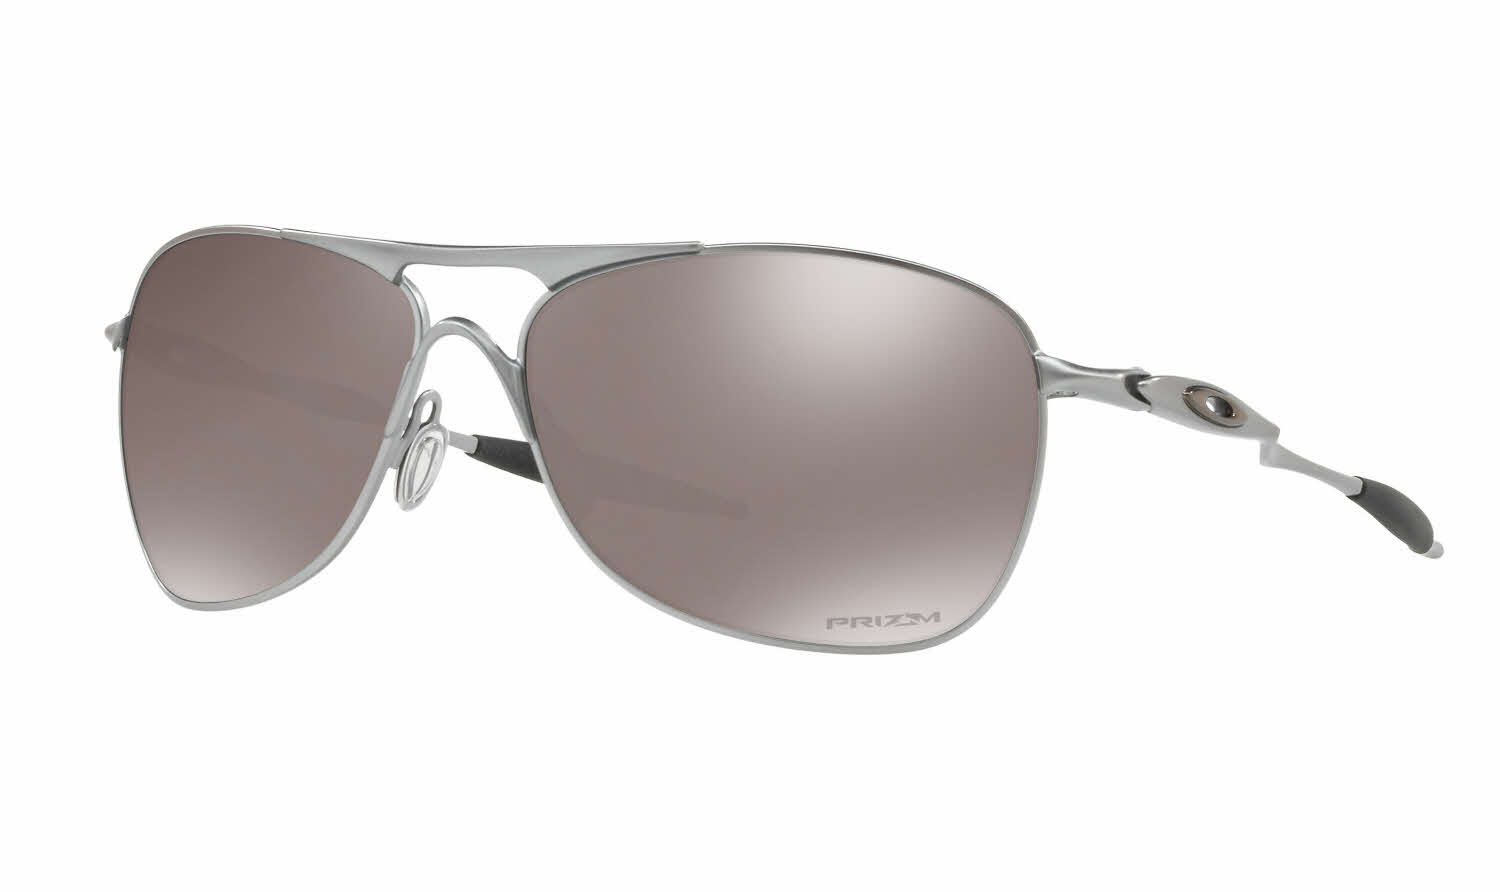 oakley aviator sunglasses for men